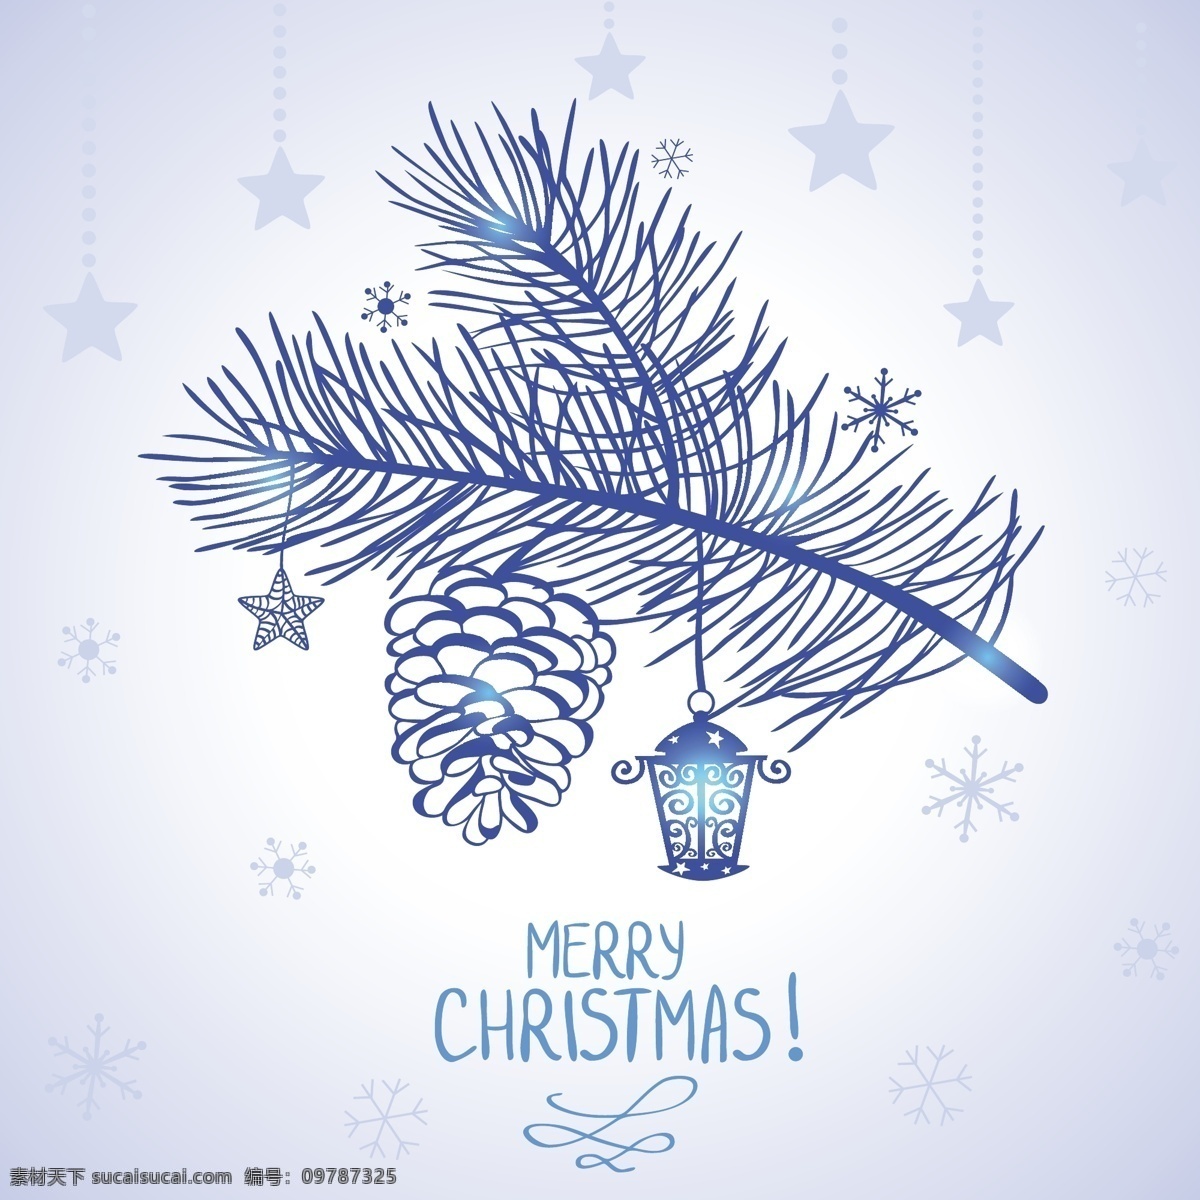 精美 蓝色 松枝 挂饰 圣诞节 矢量图 松树枝 星星 松塔 节日素材